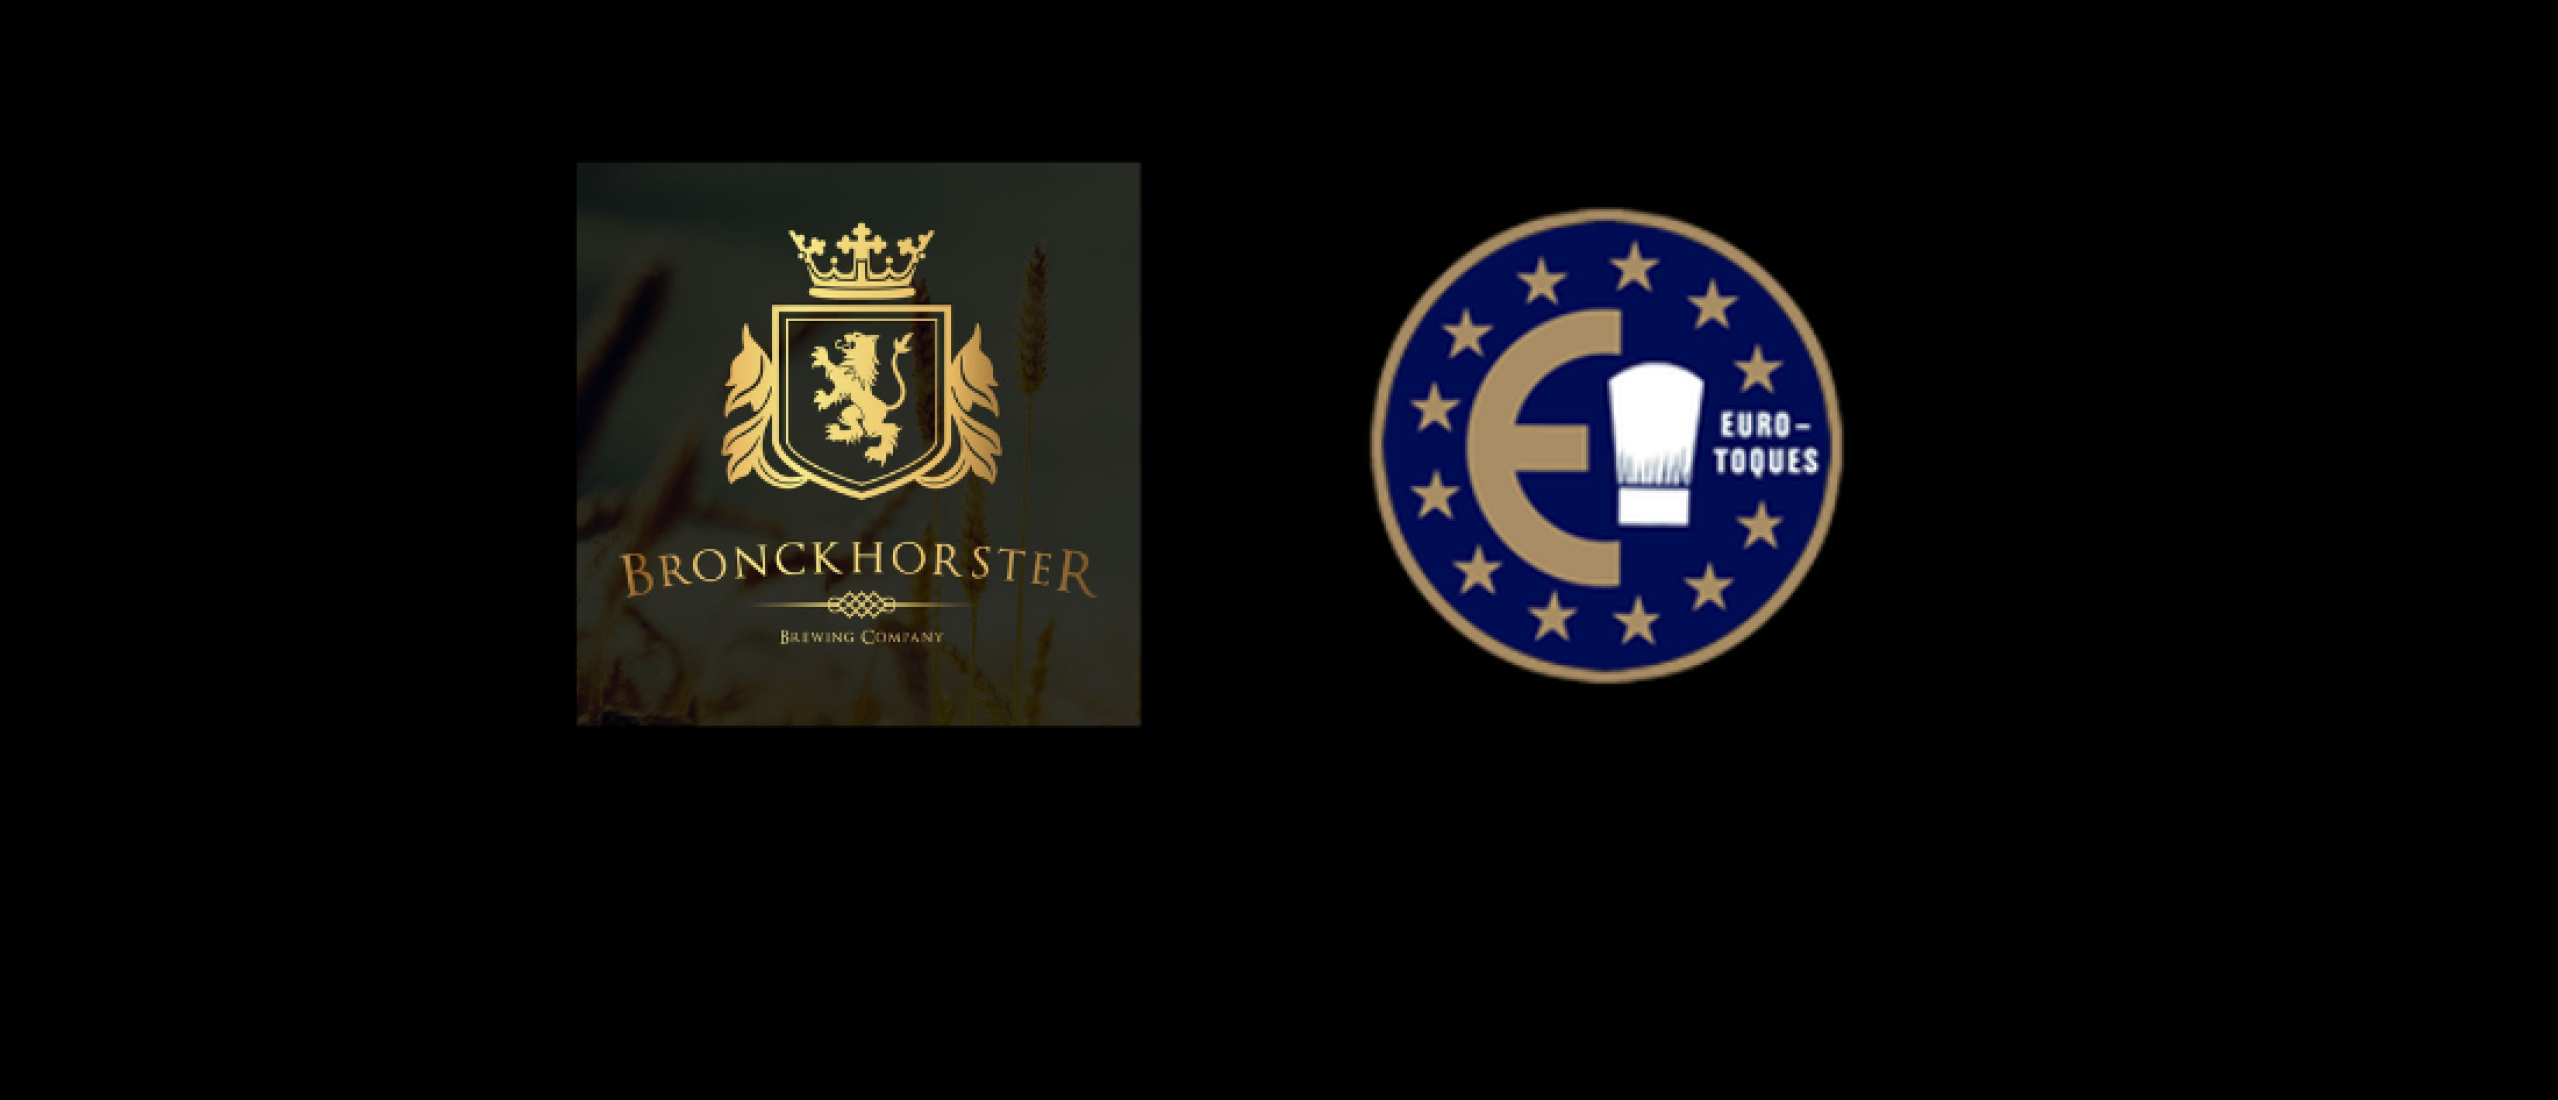 Euro-Toques Nederland organiseert eerste ‘Bronckhorster Beer & Food Battle’ 2023 tijdens BBB Maastricht.